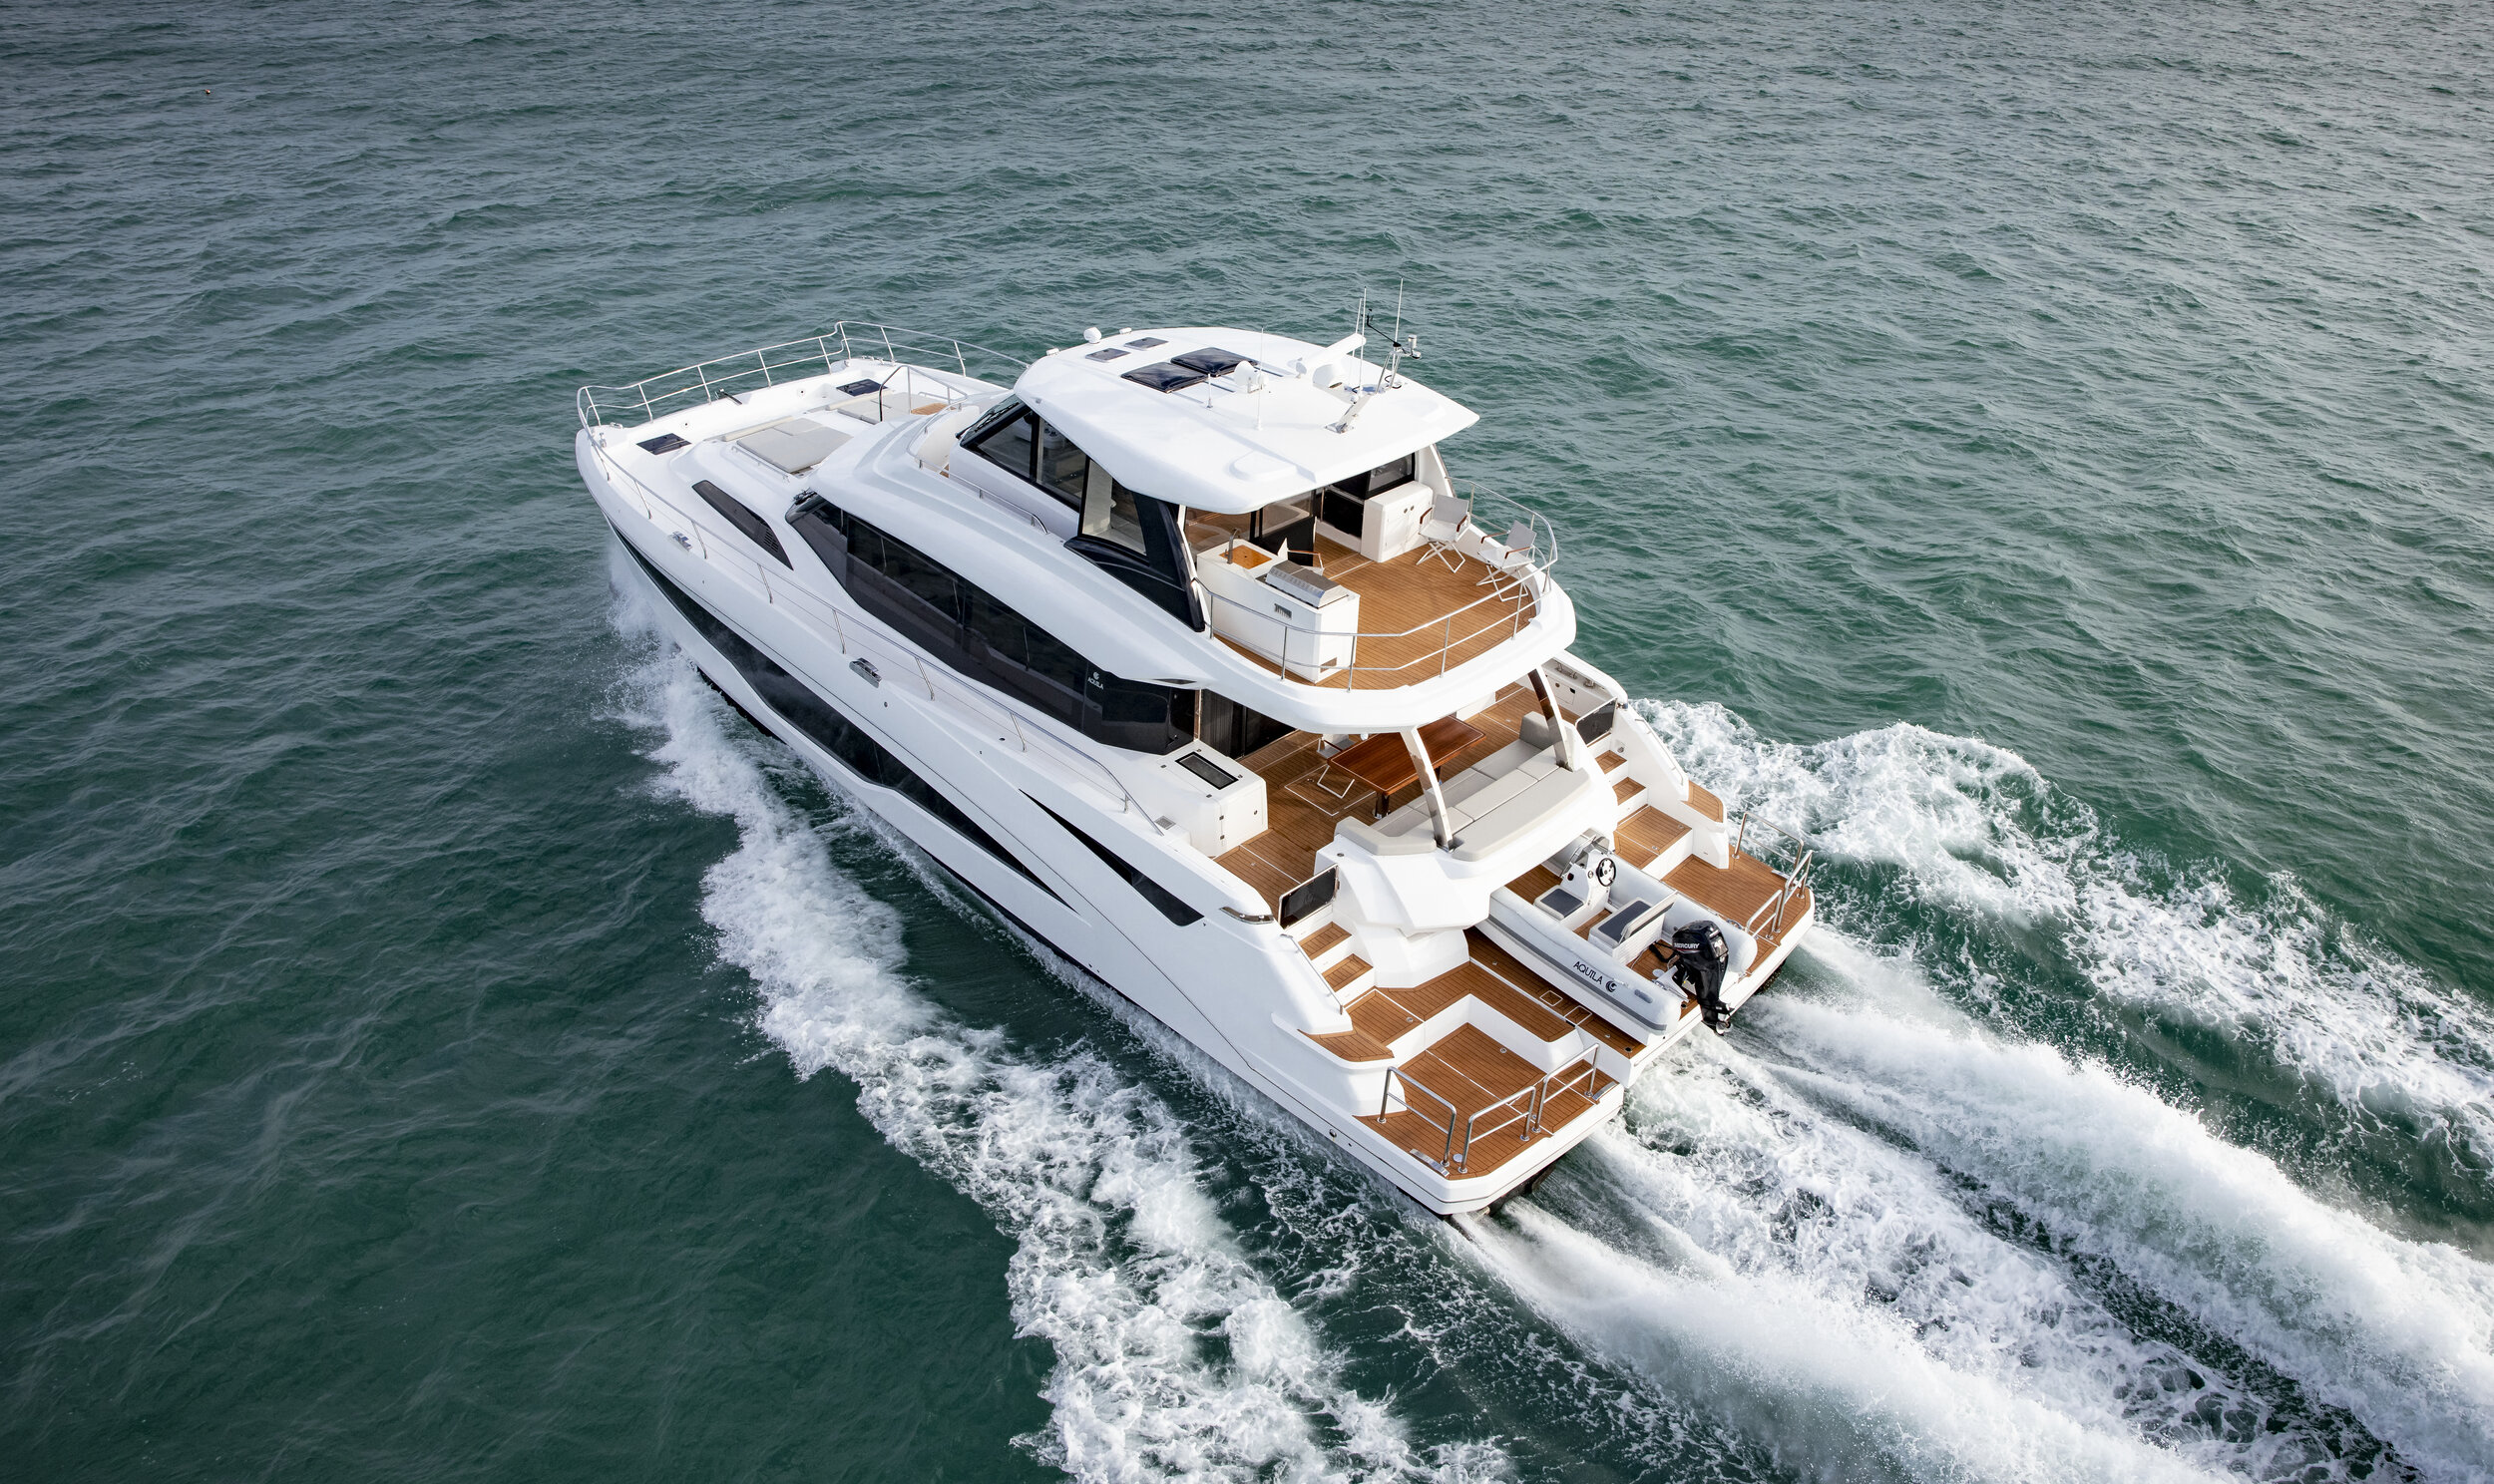 aquila 44 yacht power catamaran price